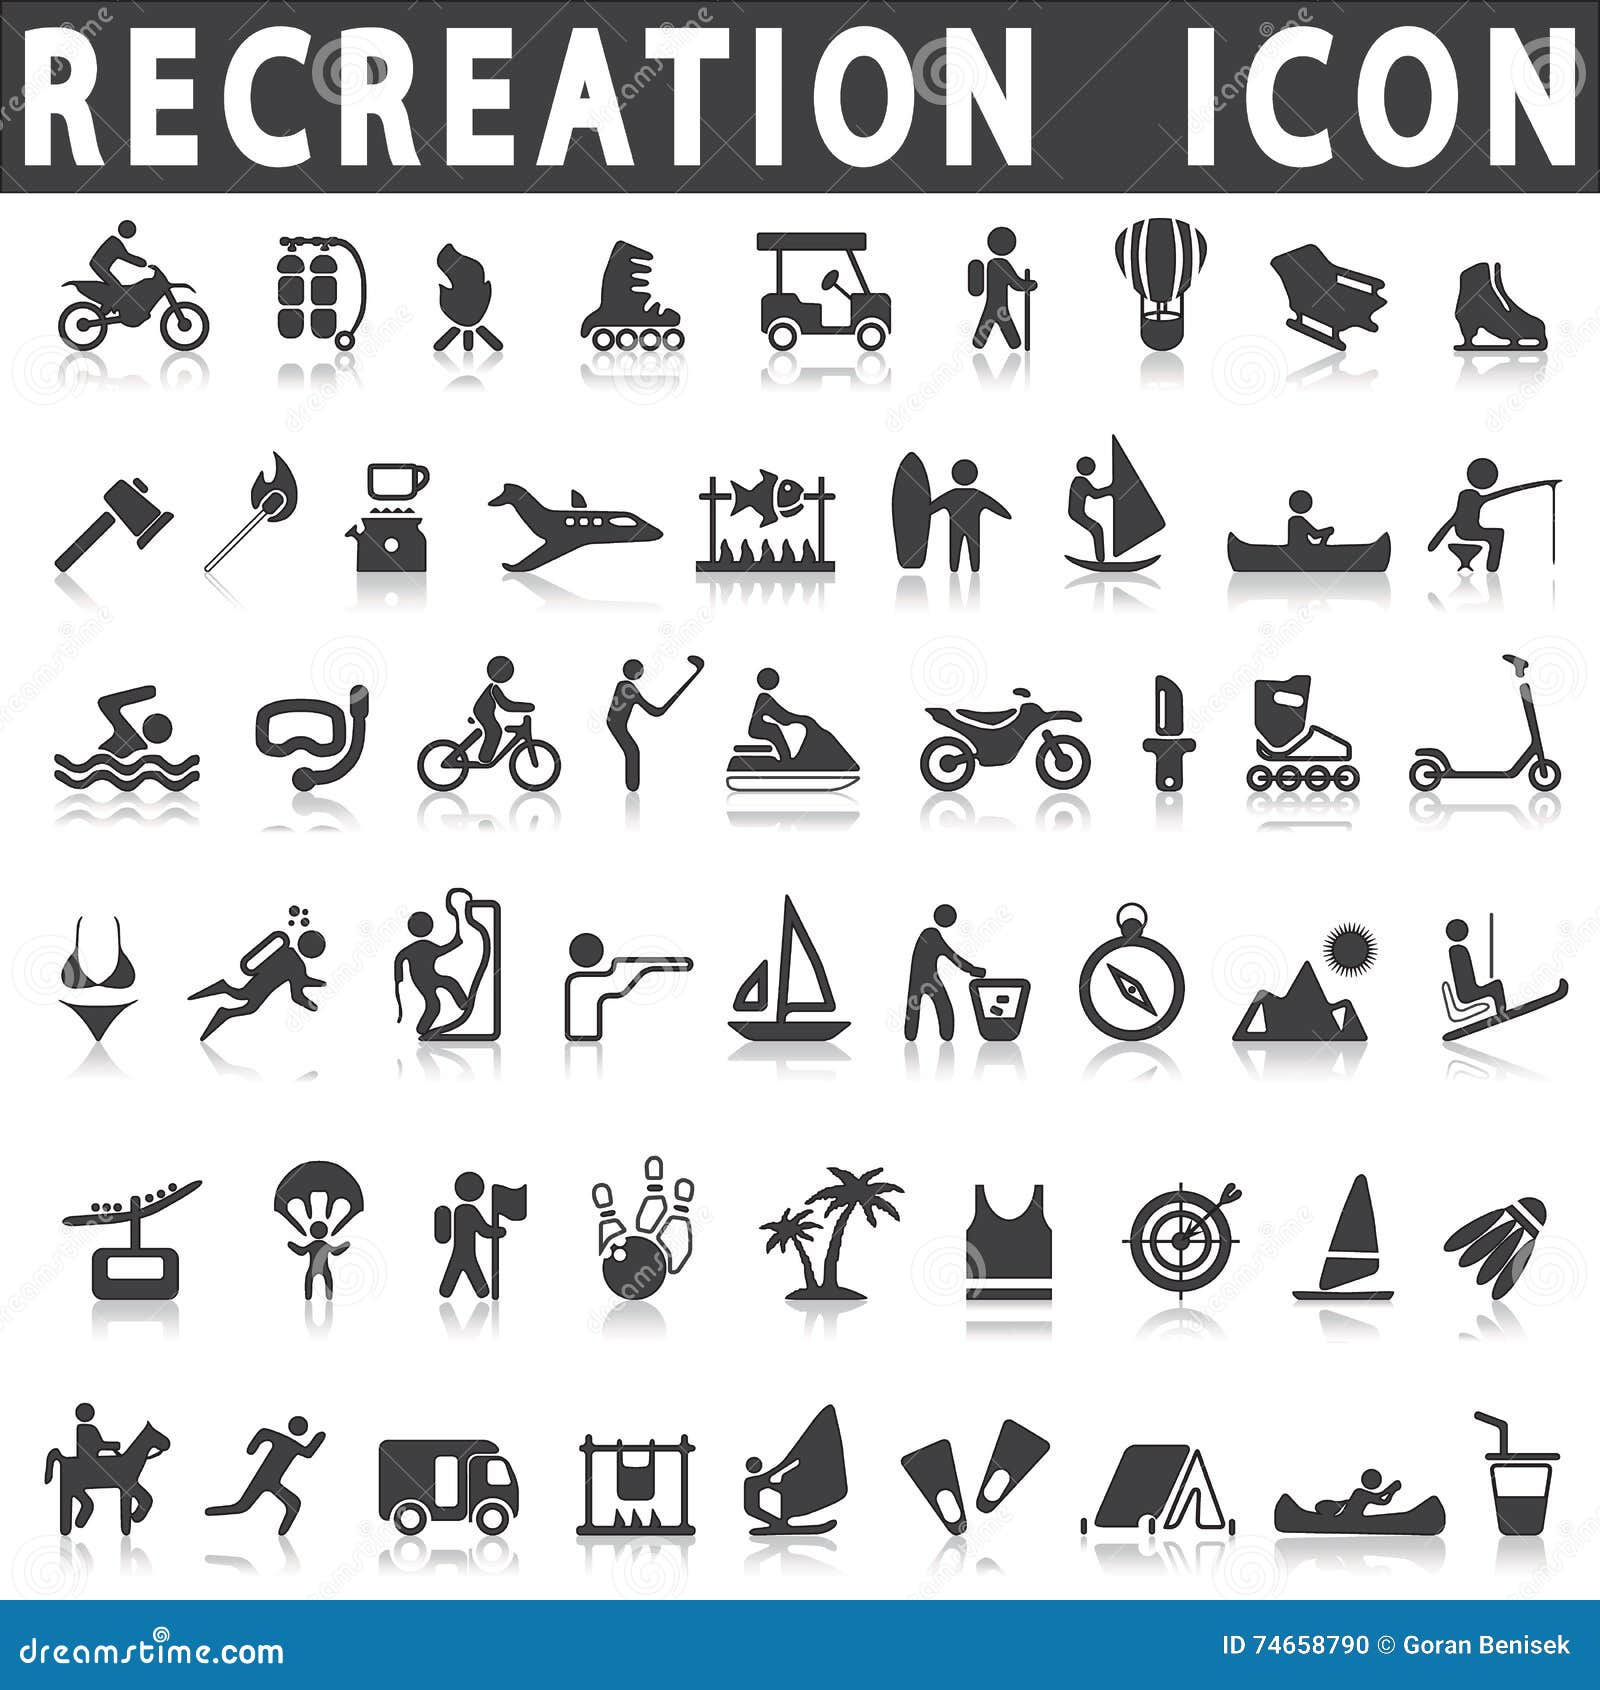 recreation icons